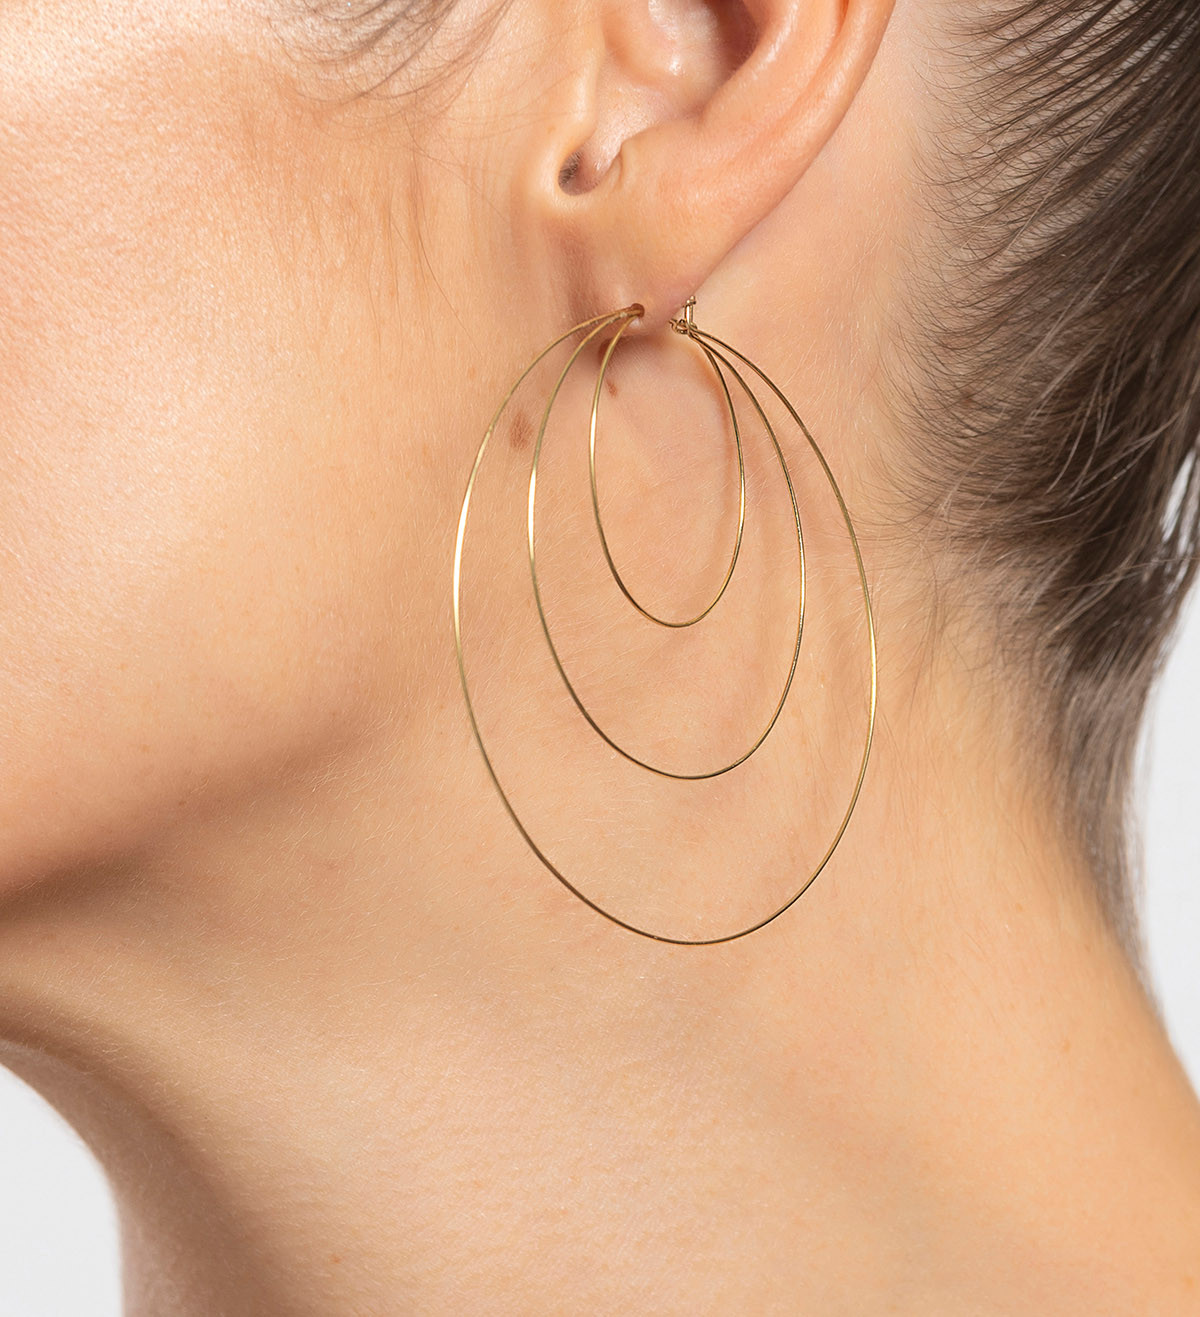 18k gold earrings 45mm